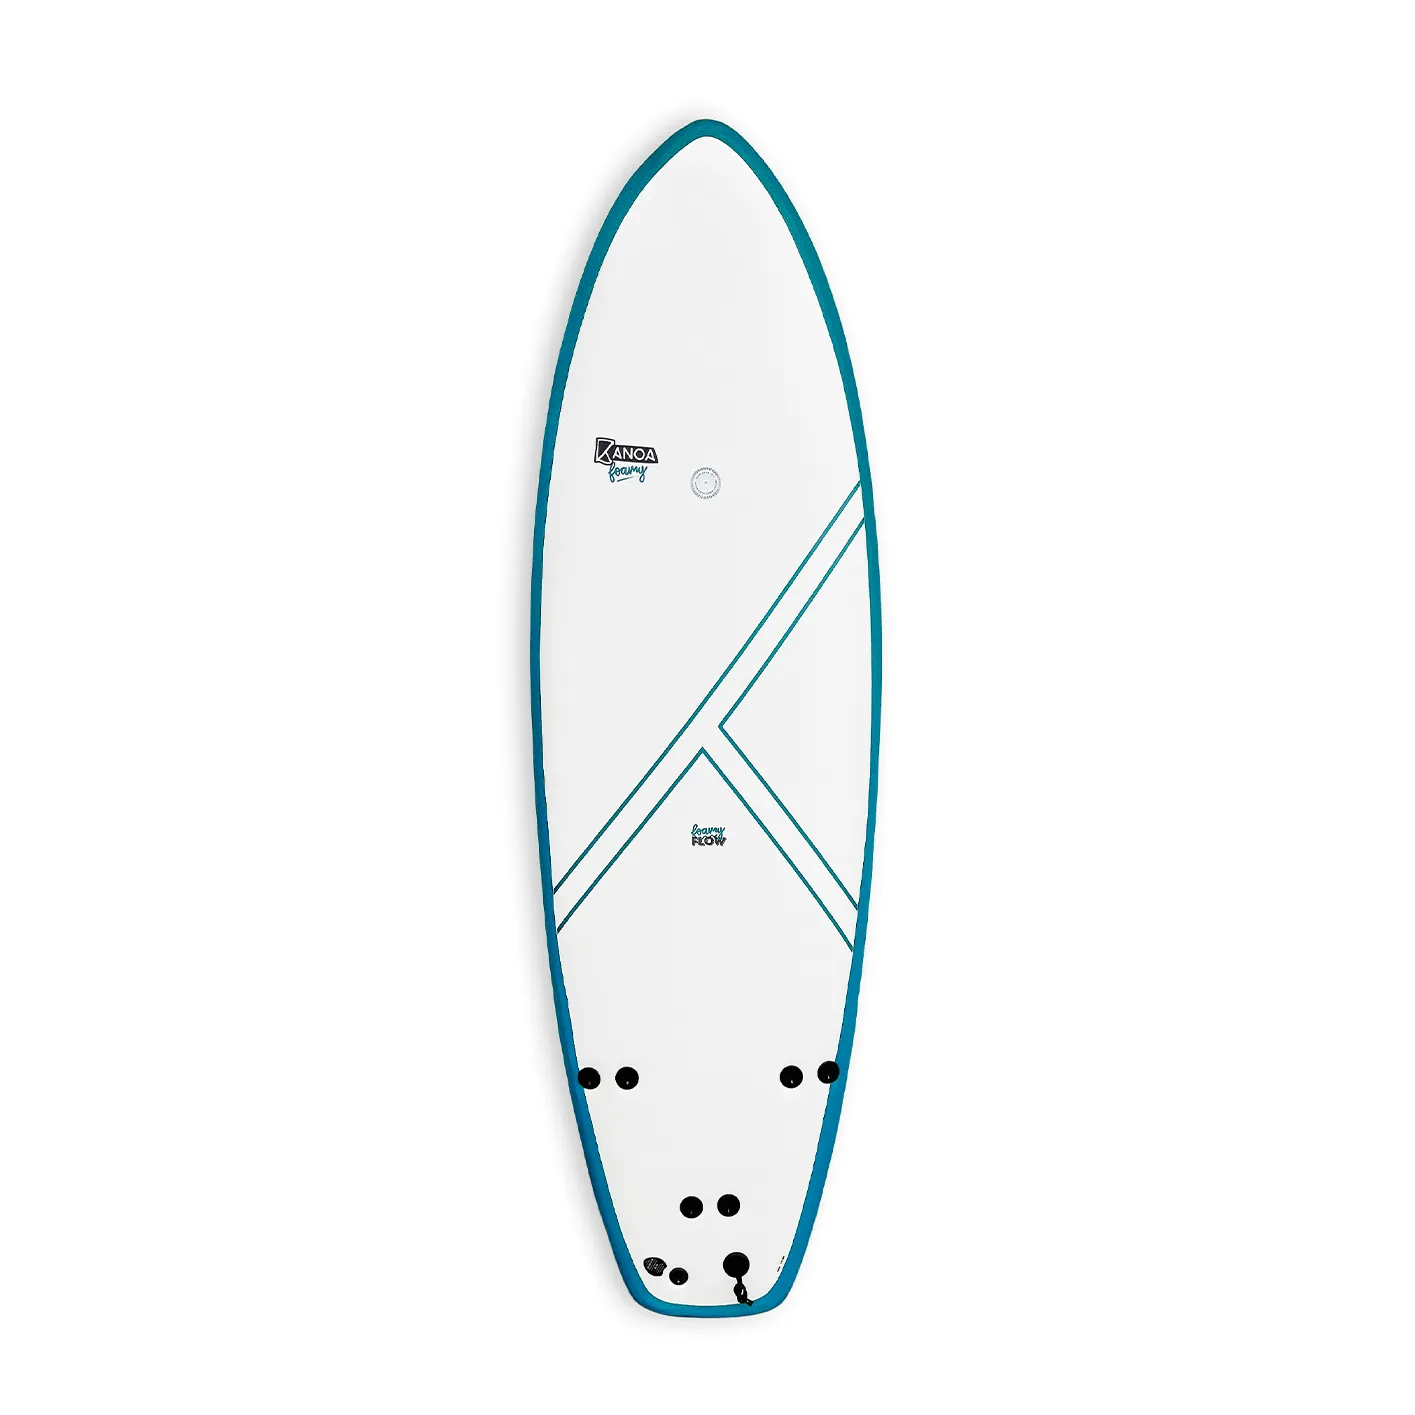 Foamy Flow X - River Foamy Surfboard for beginners and intermediates